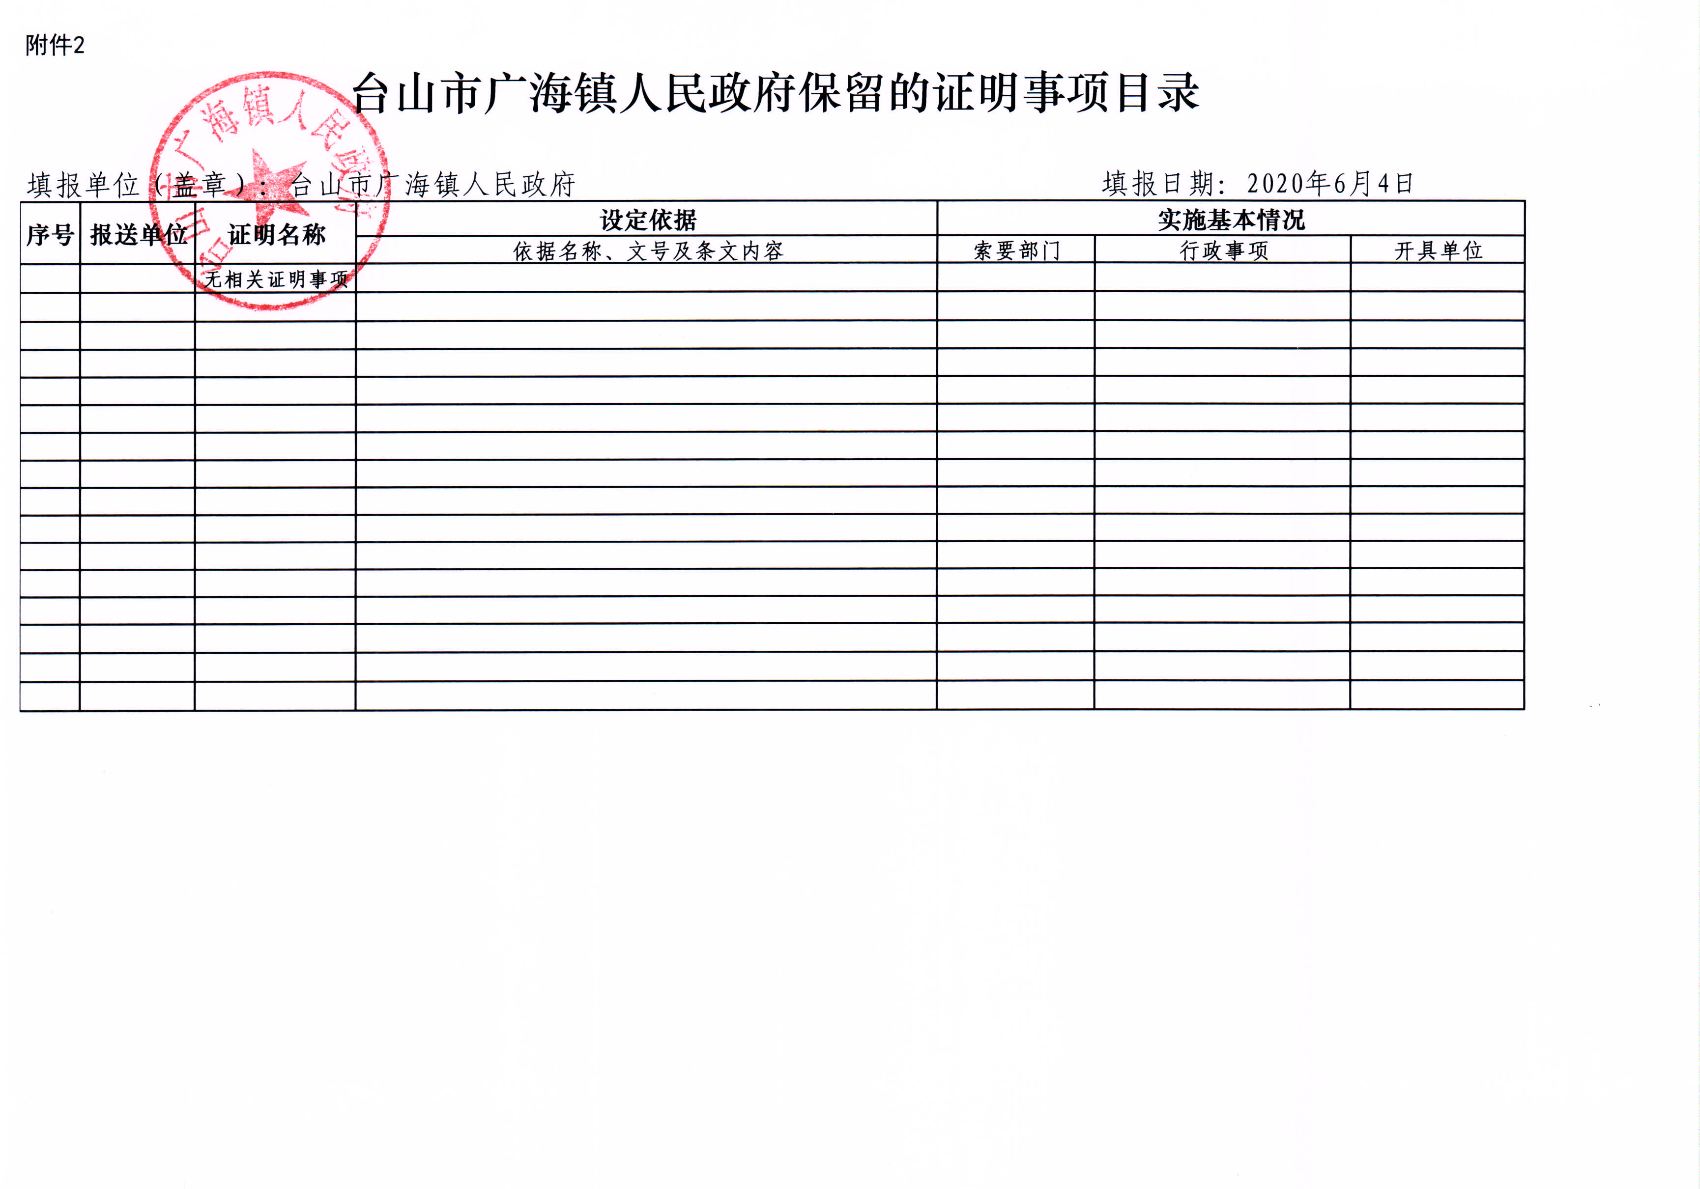 台山市广海镇人民政府保留和取消的证明事项目录2.jpg